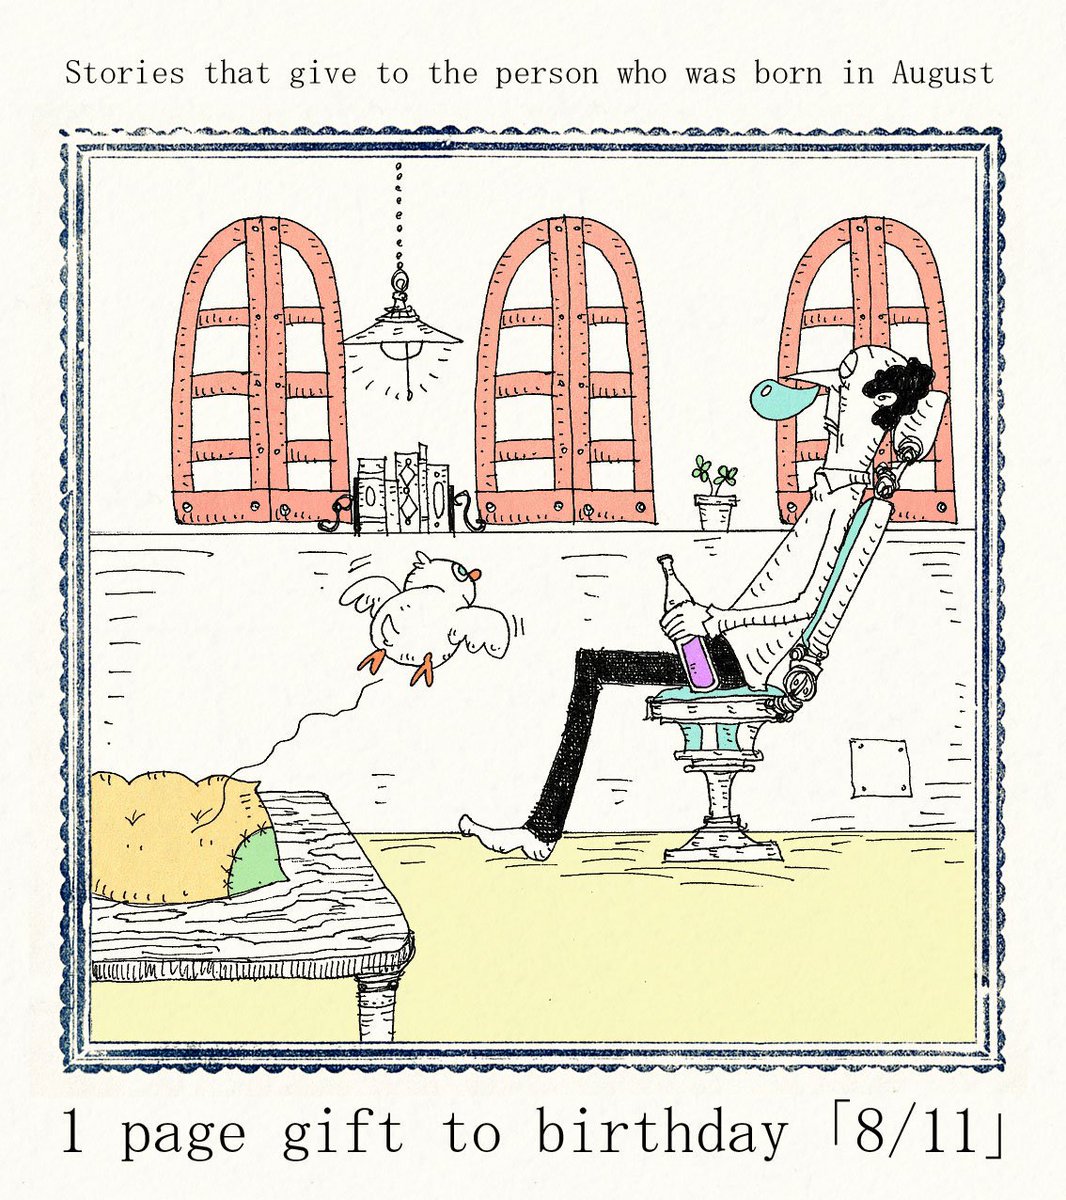 大志 毎日誰かの誕生日 8 11生まれの方 お誕生日おめでとうございます 8月11日生まれの方に届くと嬉しいです 誕生日 8月11日 Happybirthday イラスト 絵 ボールペン画